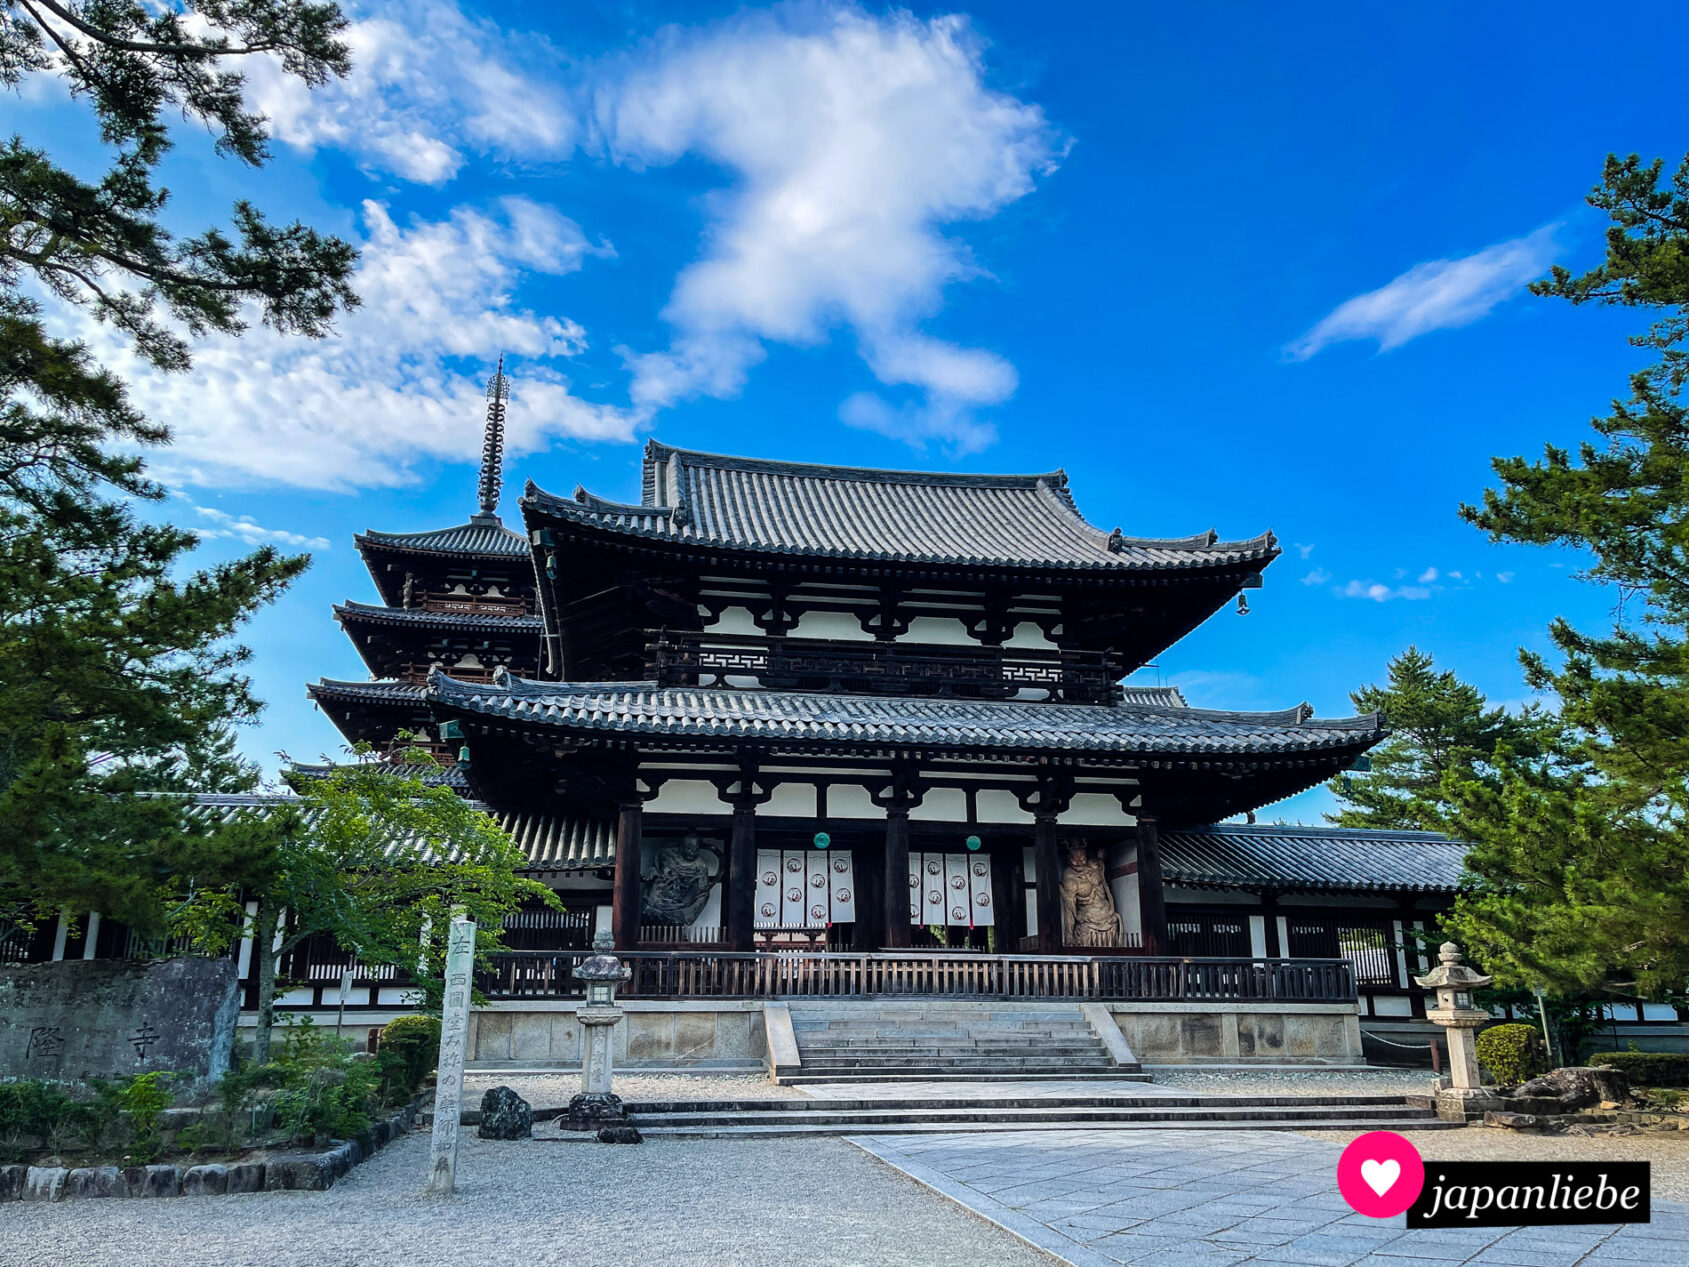 Das südliche Tor und die fünfstöckige Pagode des Hōryū-ji-Tempels.